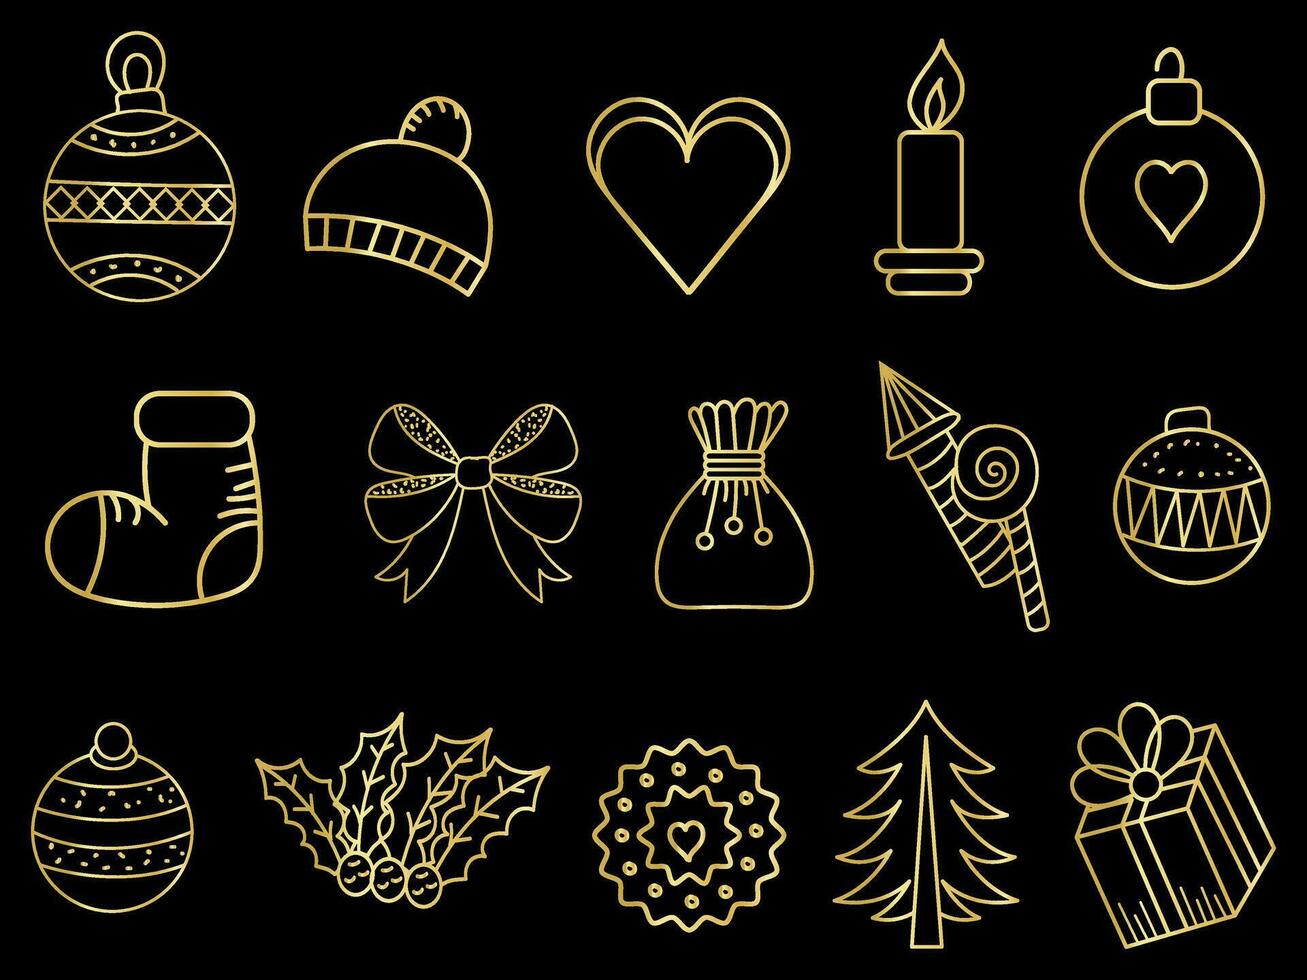 dorado Navidad adornos conjunto con pelotas, copos de nieve, sombreros, estrella, Navidad árbol, naranja, calcetín, regalo, bebida y guirnaldas vector